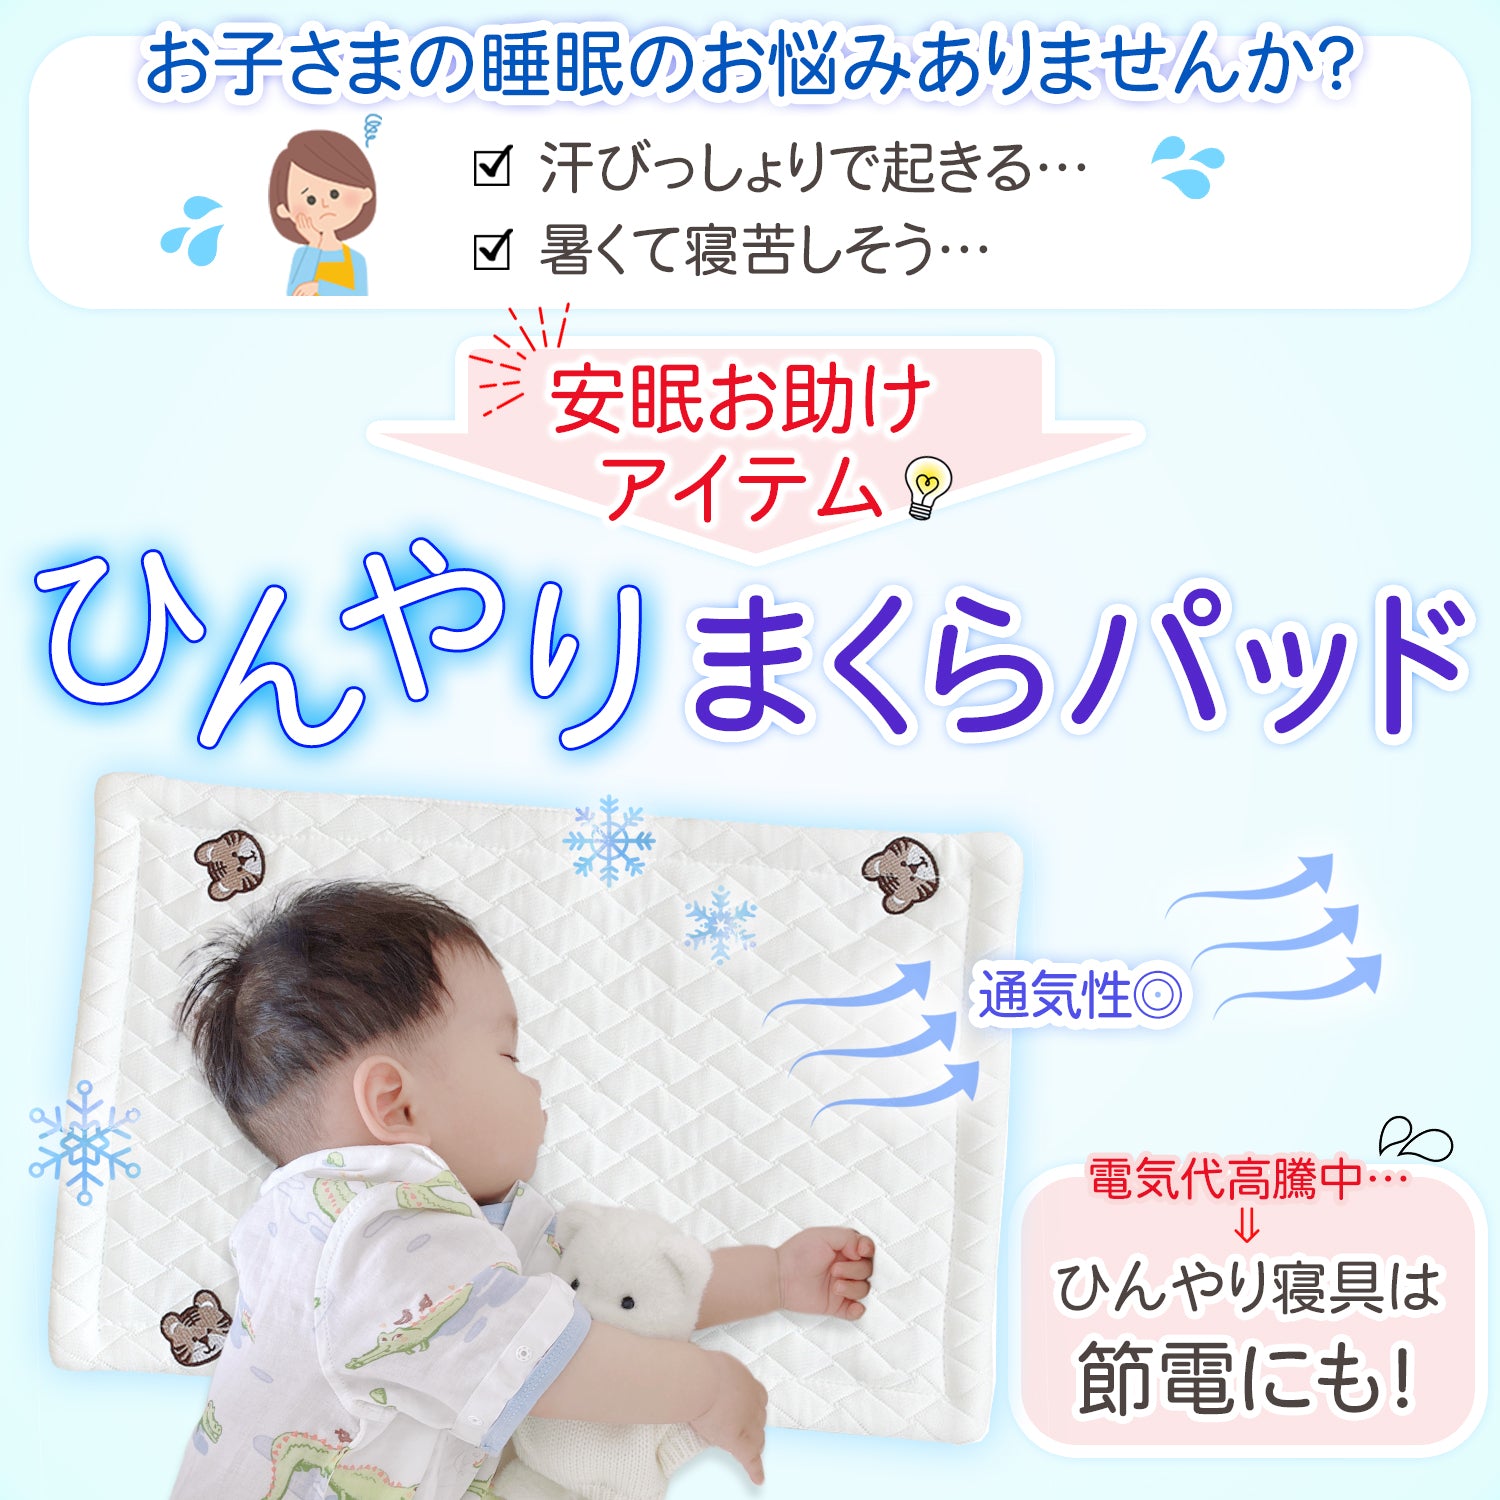 枕パッド 赤ちゃん用  冷感 50×30✕1.5cm